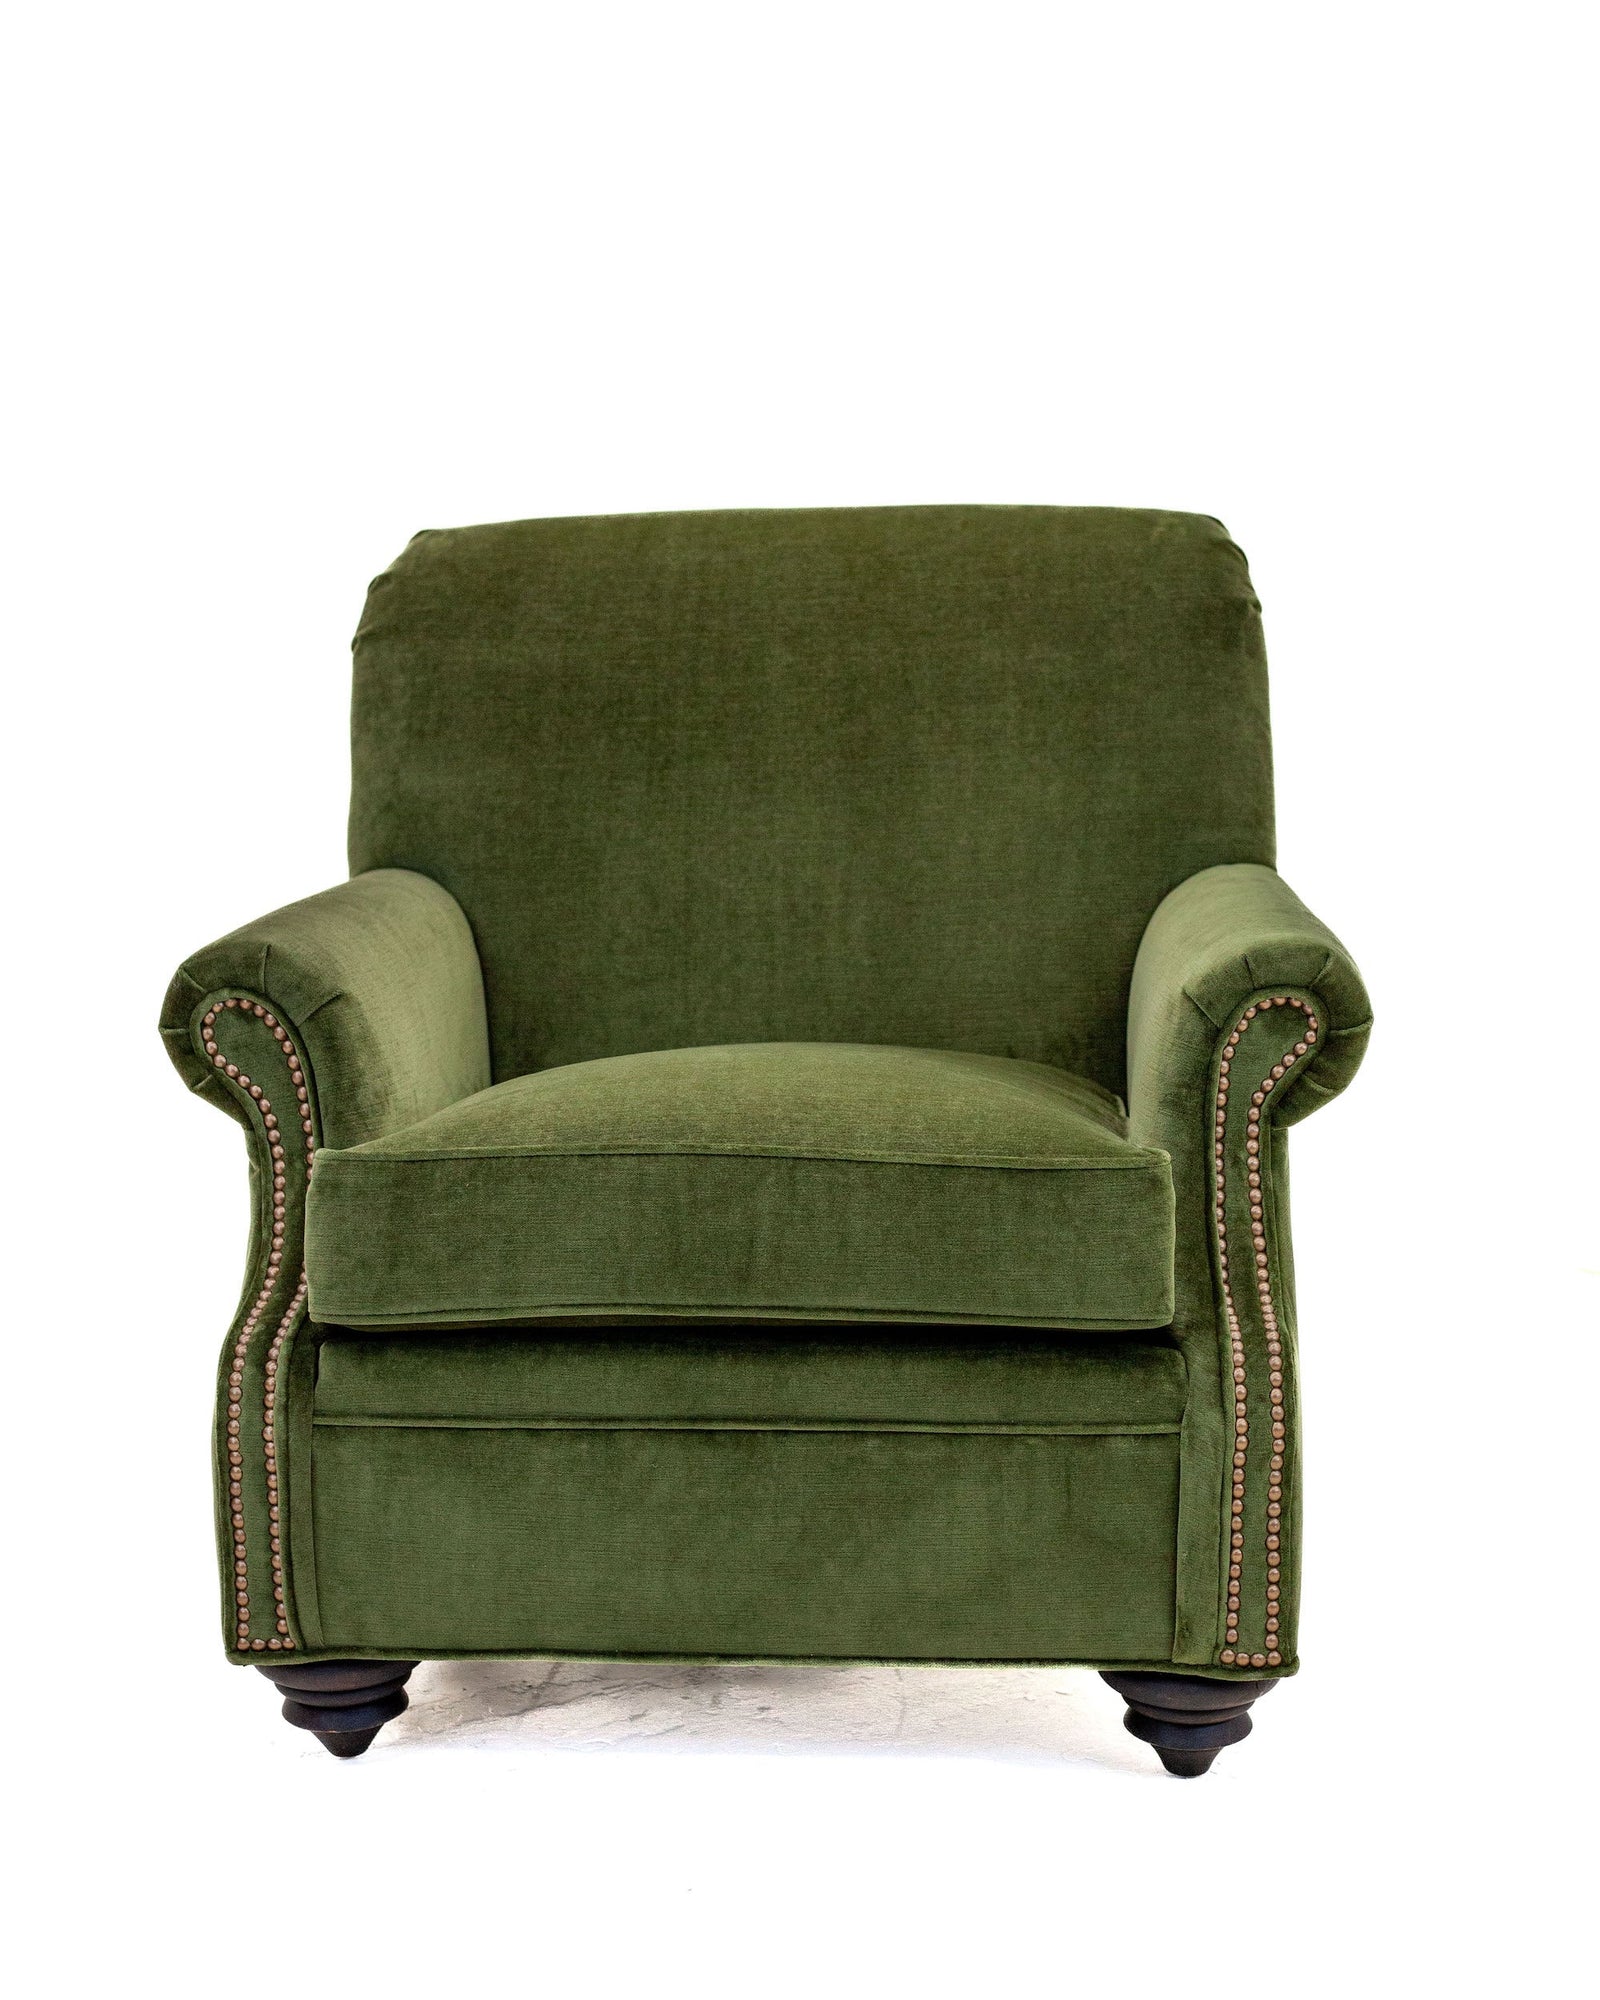 The Great Room Green Velvet Chair